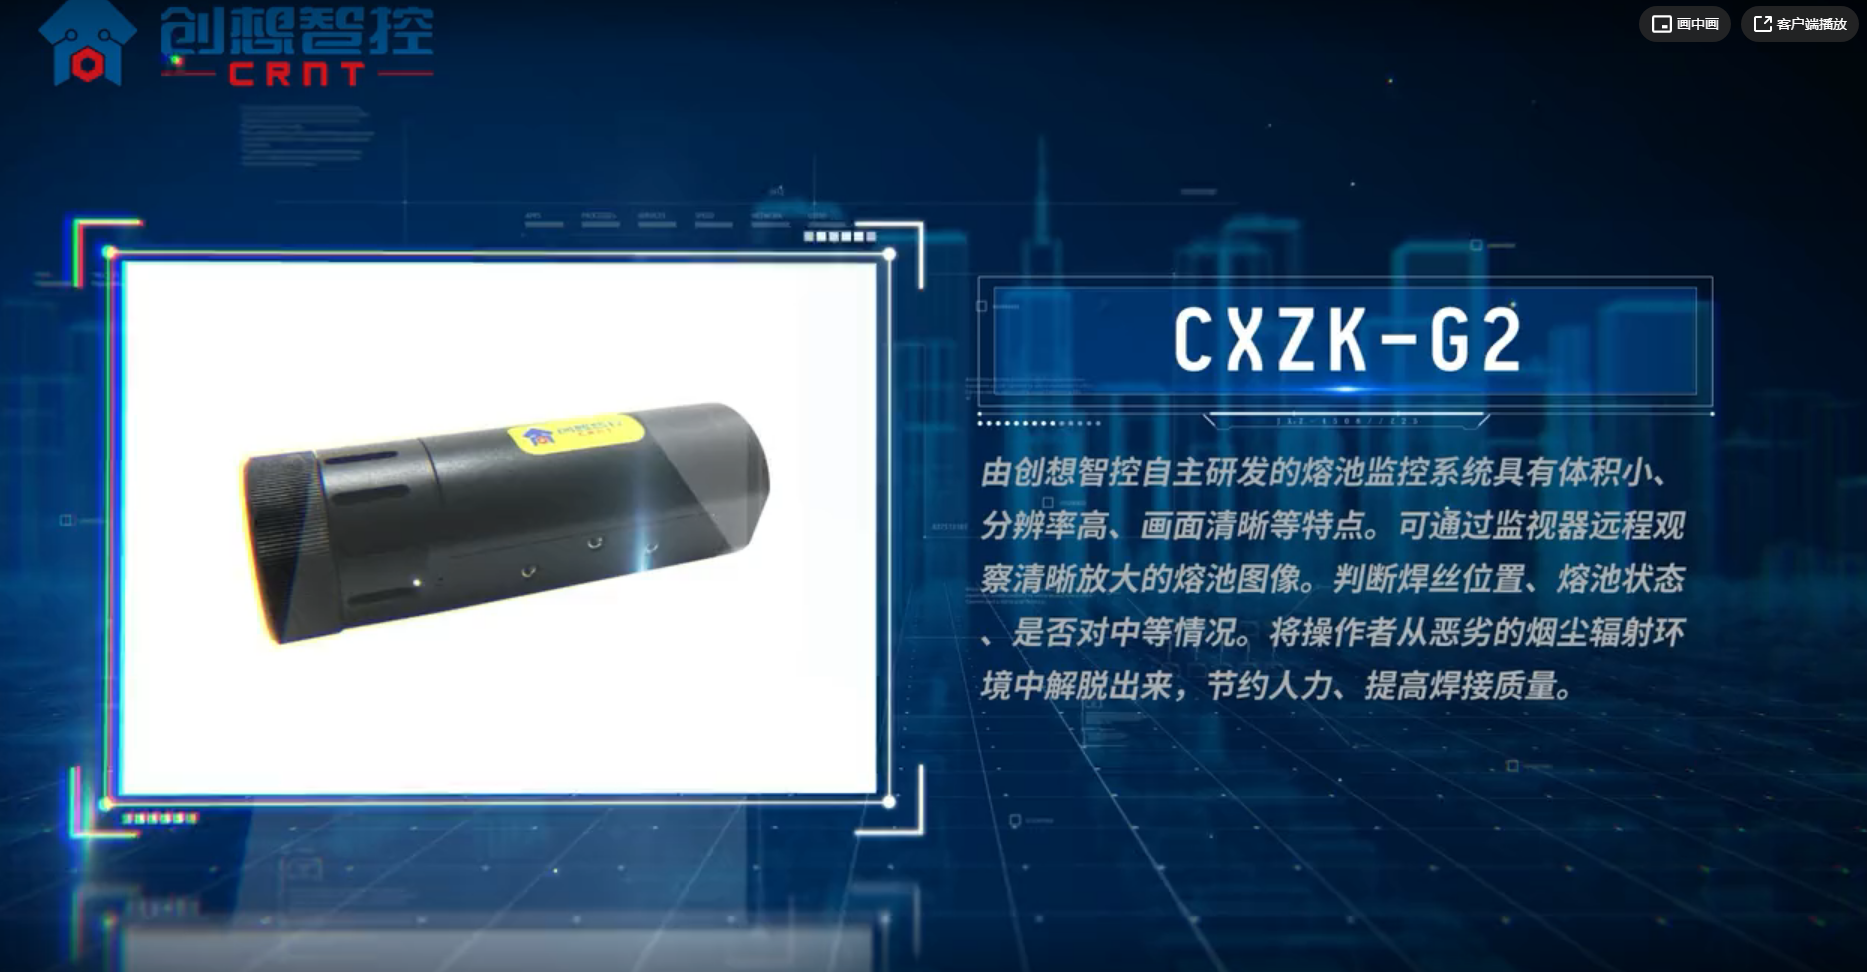 2021太阳成集团tyc7111cc熔池监控系列产品介绍